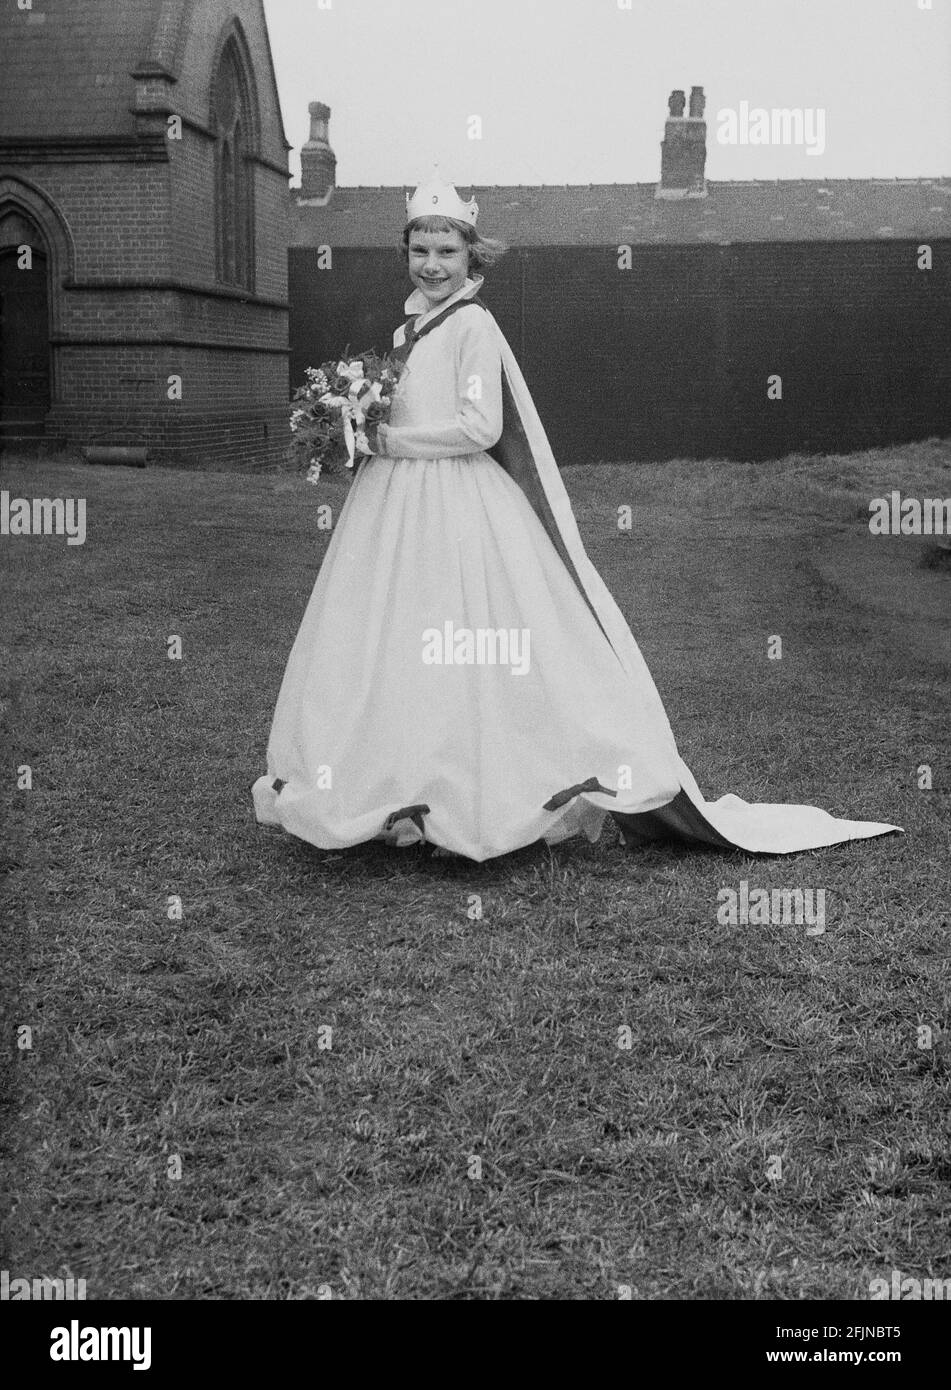 1956, historique, à l'extérieur dans le domaine de l'église, debout pour sa photo, la Reine de mai de la ville, une jeune fille portant une couronne et une longue robe, avec bouquet de fleurs. Angleterre, Royaume-Uni. Un ancien festival célébrant l'arrivée du printemps, le jour de mai a impliqué le couronnement d'une reine de mai et la danse autour d'un Maypole, des activités qui ont eu lieu en Angleterre pendant des siècles. Sélectionné parmi les filles de la région, la Reine de mai commencerait la procession des chars et de la danse. Dans le Nord industrialisé de l'Angleterre, les écoles du Dimanche de l'Église dirigeaient souvent son organisation. Banque D'Images